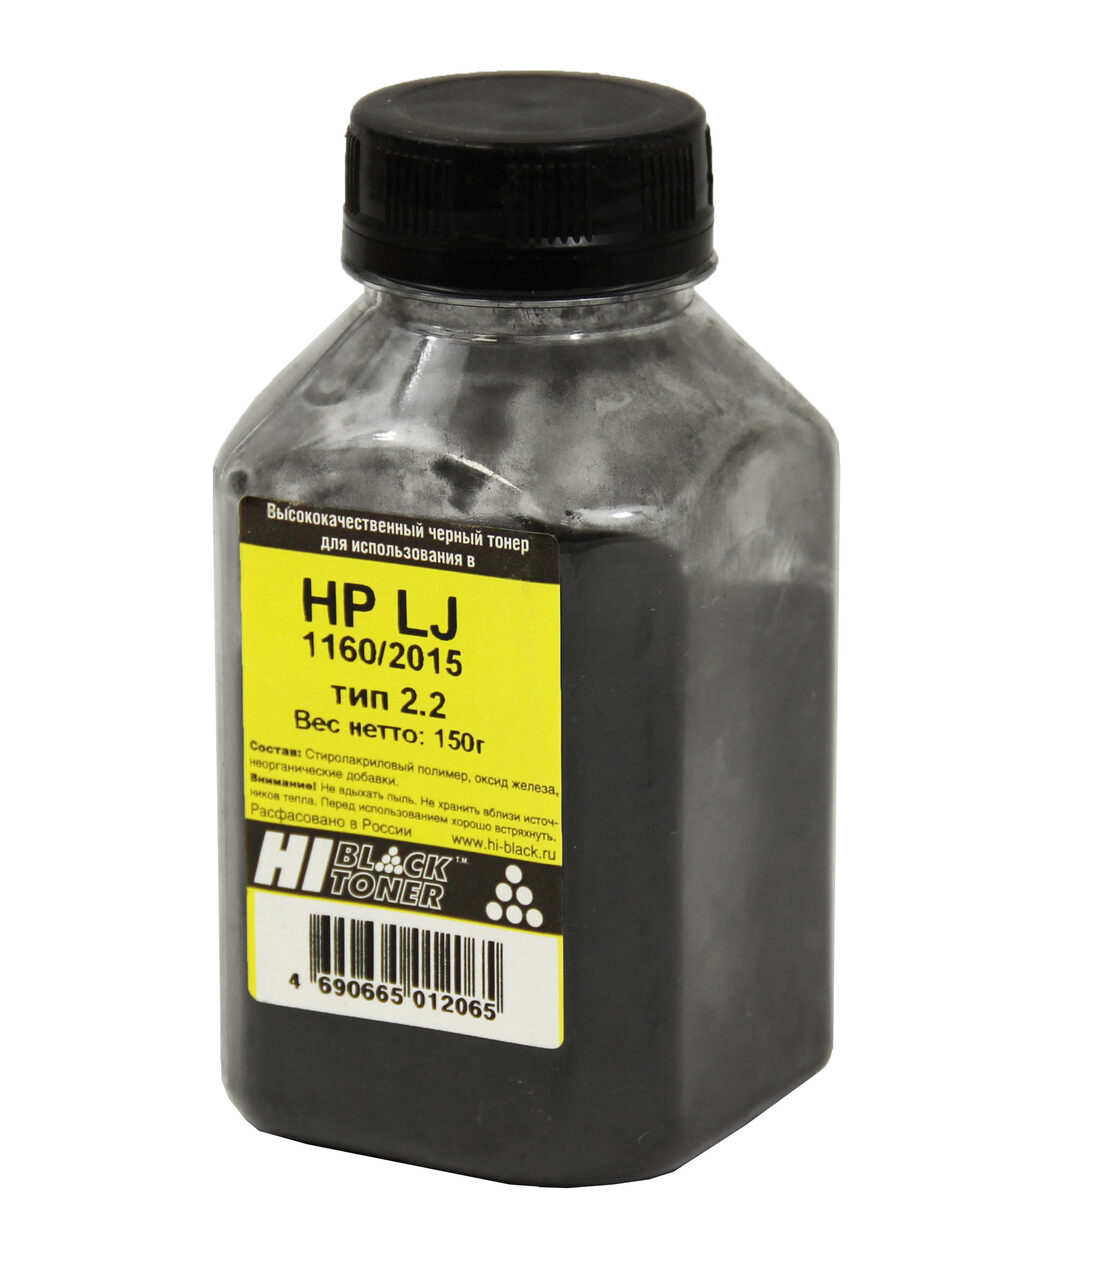 Тонер Hi-Black для HP LJ 1160/2015, Тип 2.2, Bk, 150 г, банка